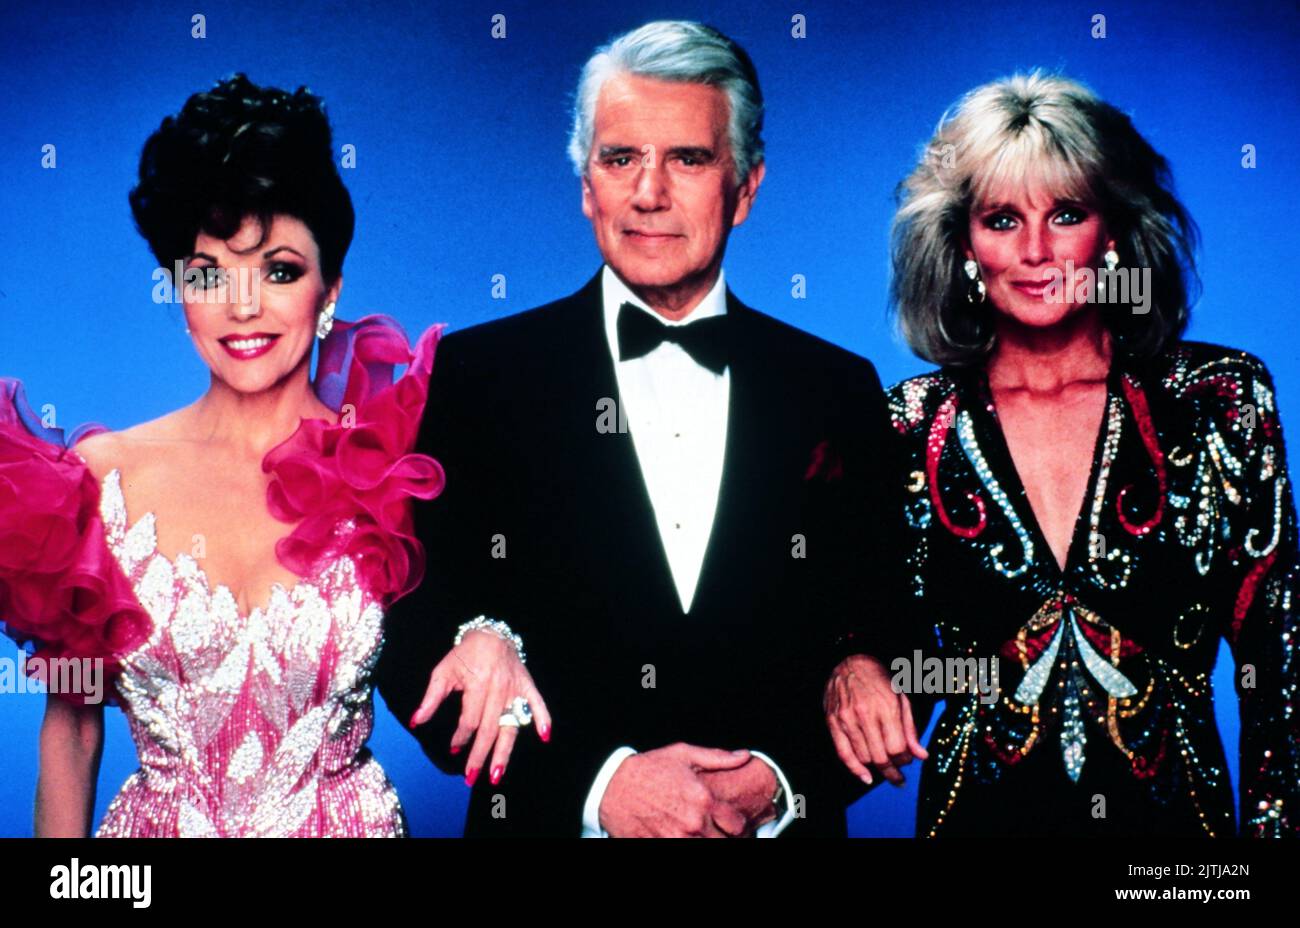 Dynasty, alias Der Denver Clan, Fernsehserie, USA 1981 - 1989, Darsteller: Joan Collins, John Forsythe, Linda Evans Banque D'Images